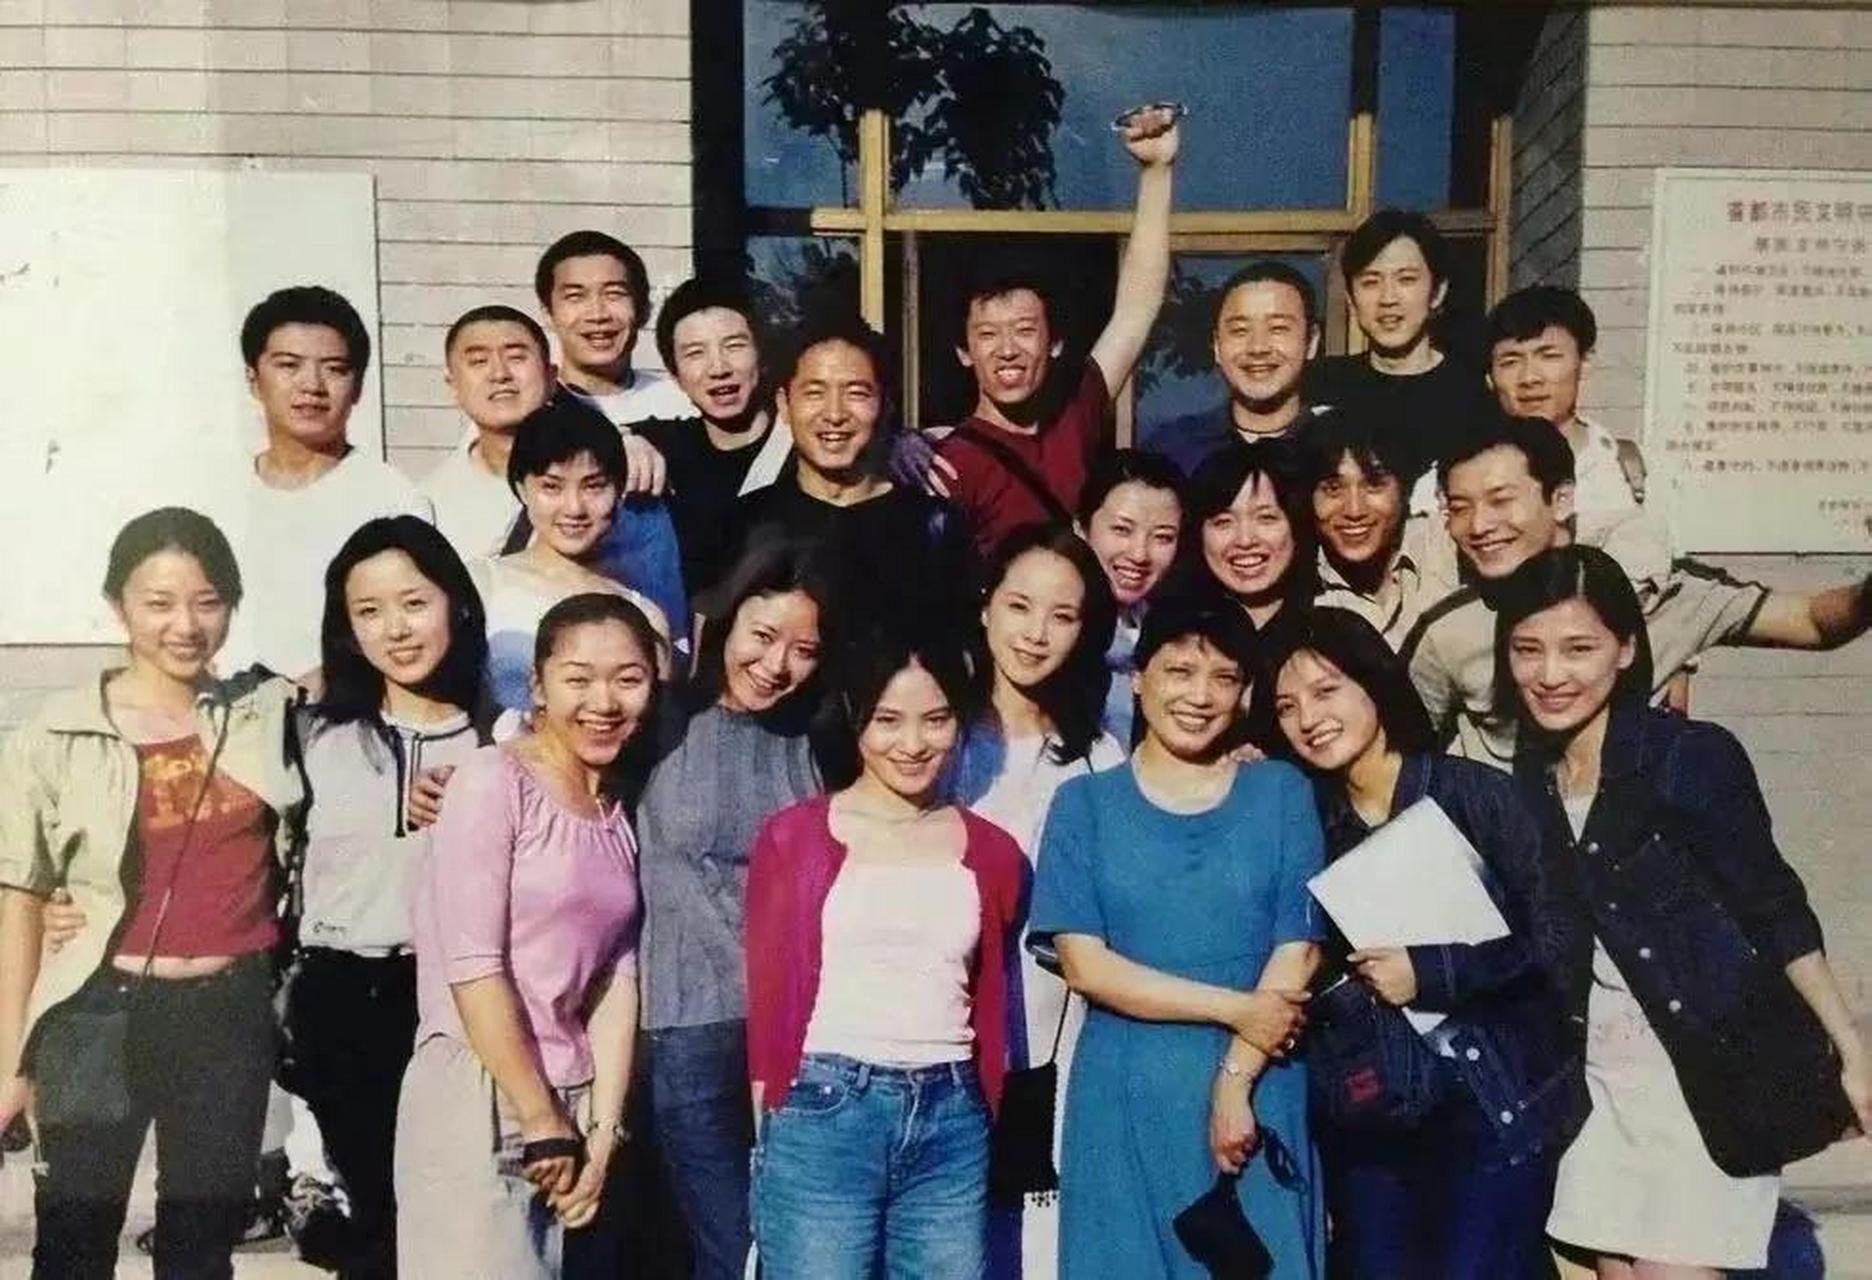 1996年,北京电影学院的表演班毕业合影,那一届的学生真可以说是群星